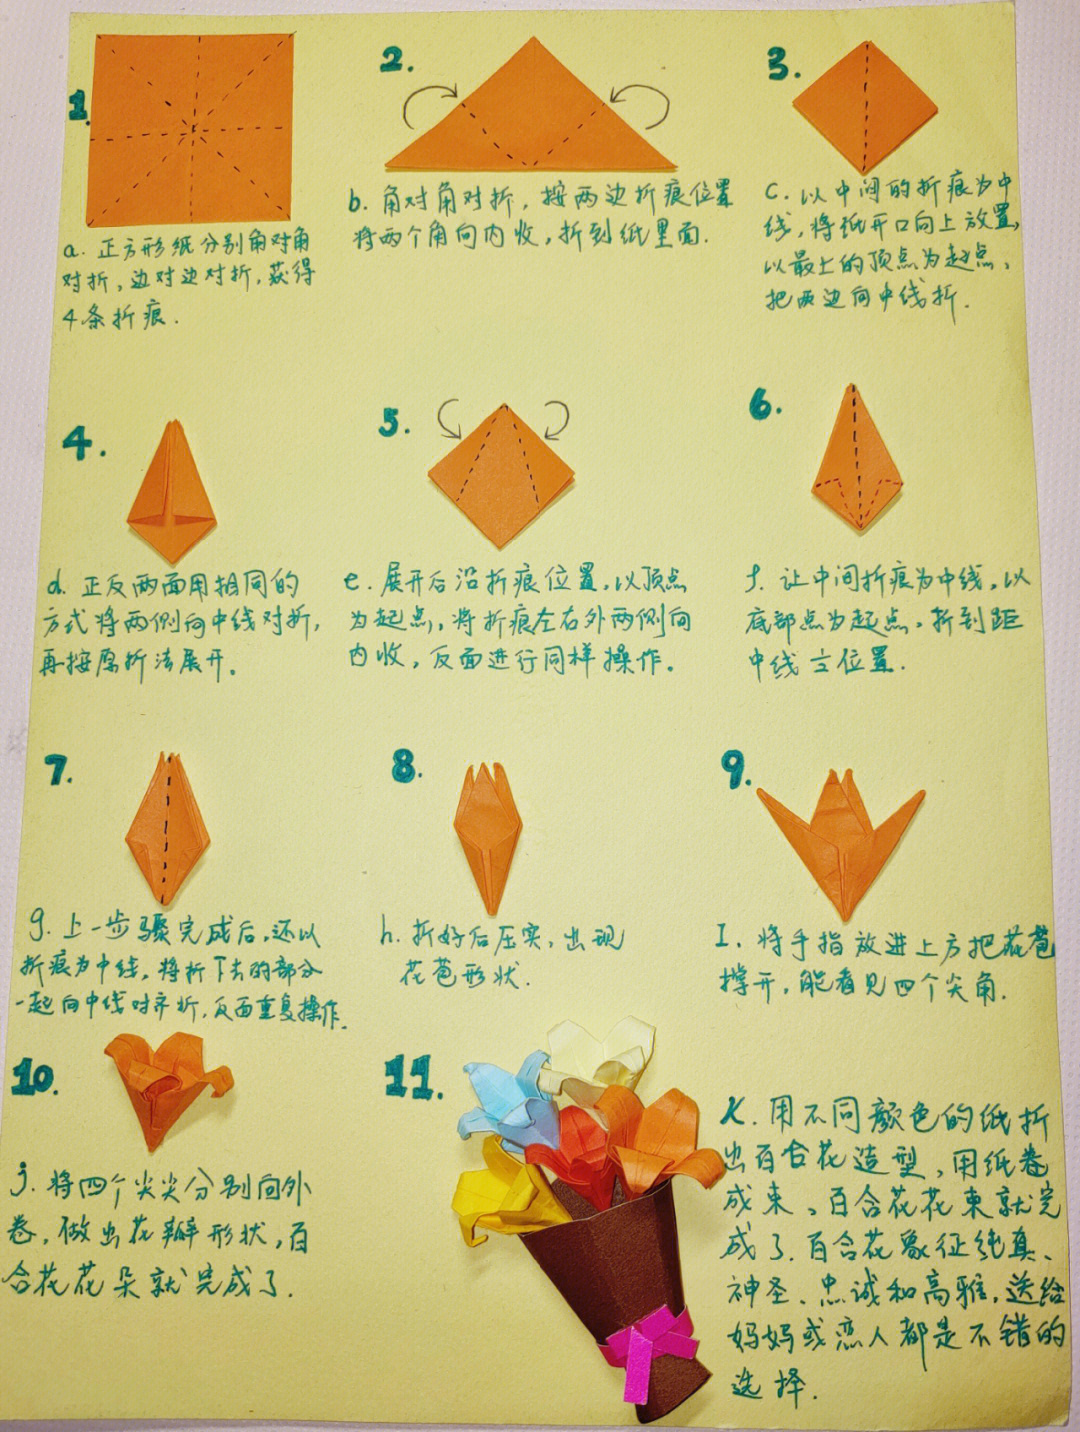 百合花折纸